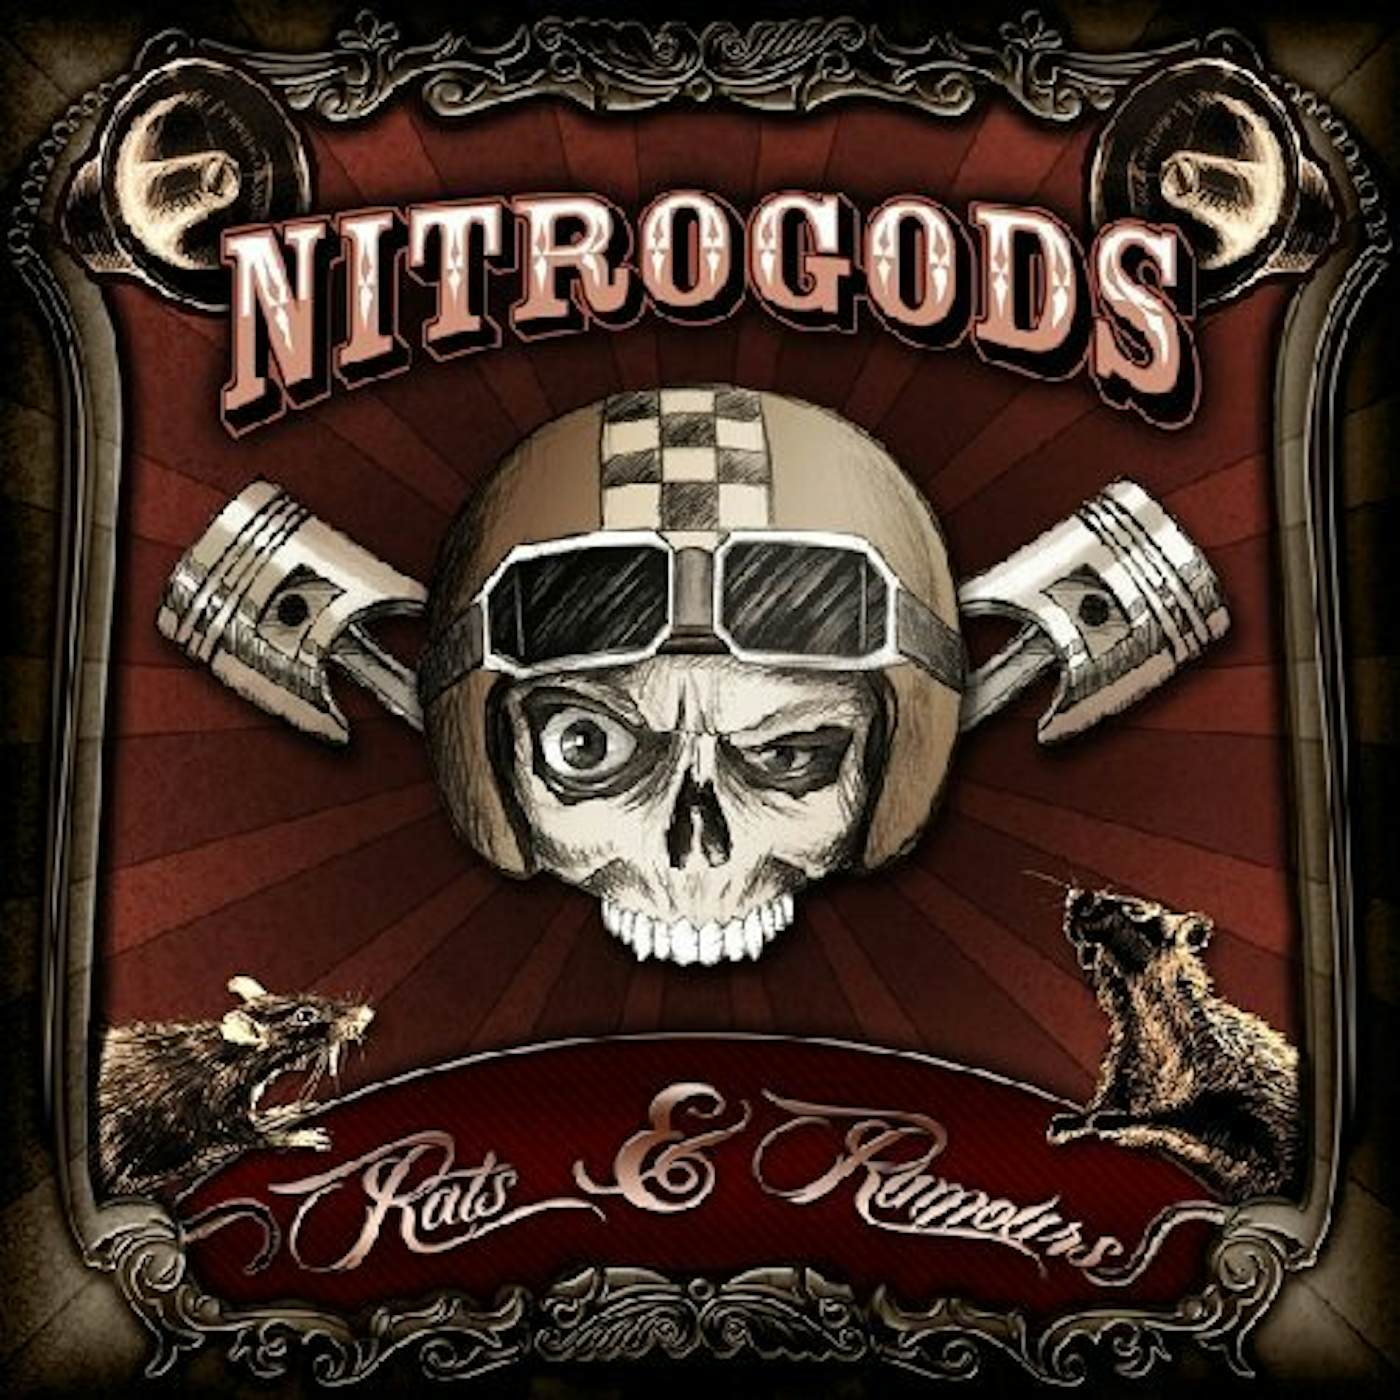 Nitrogods Rats & Rumours Vinyl Record